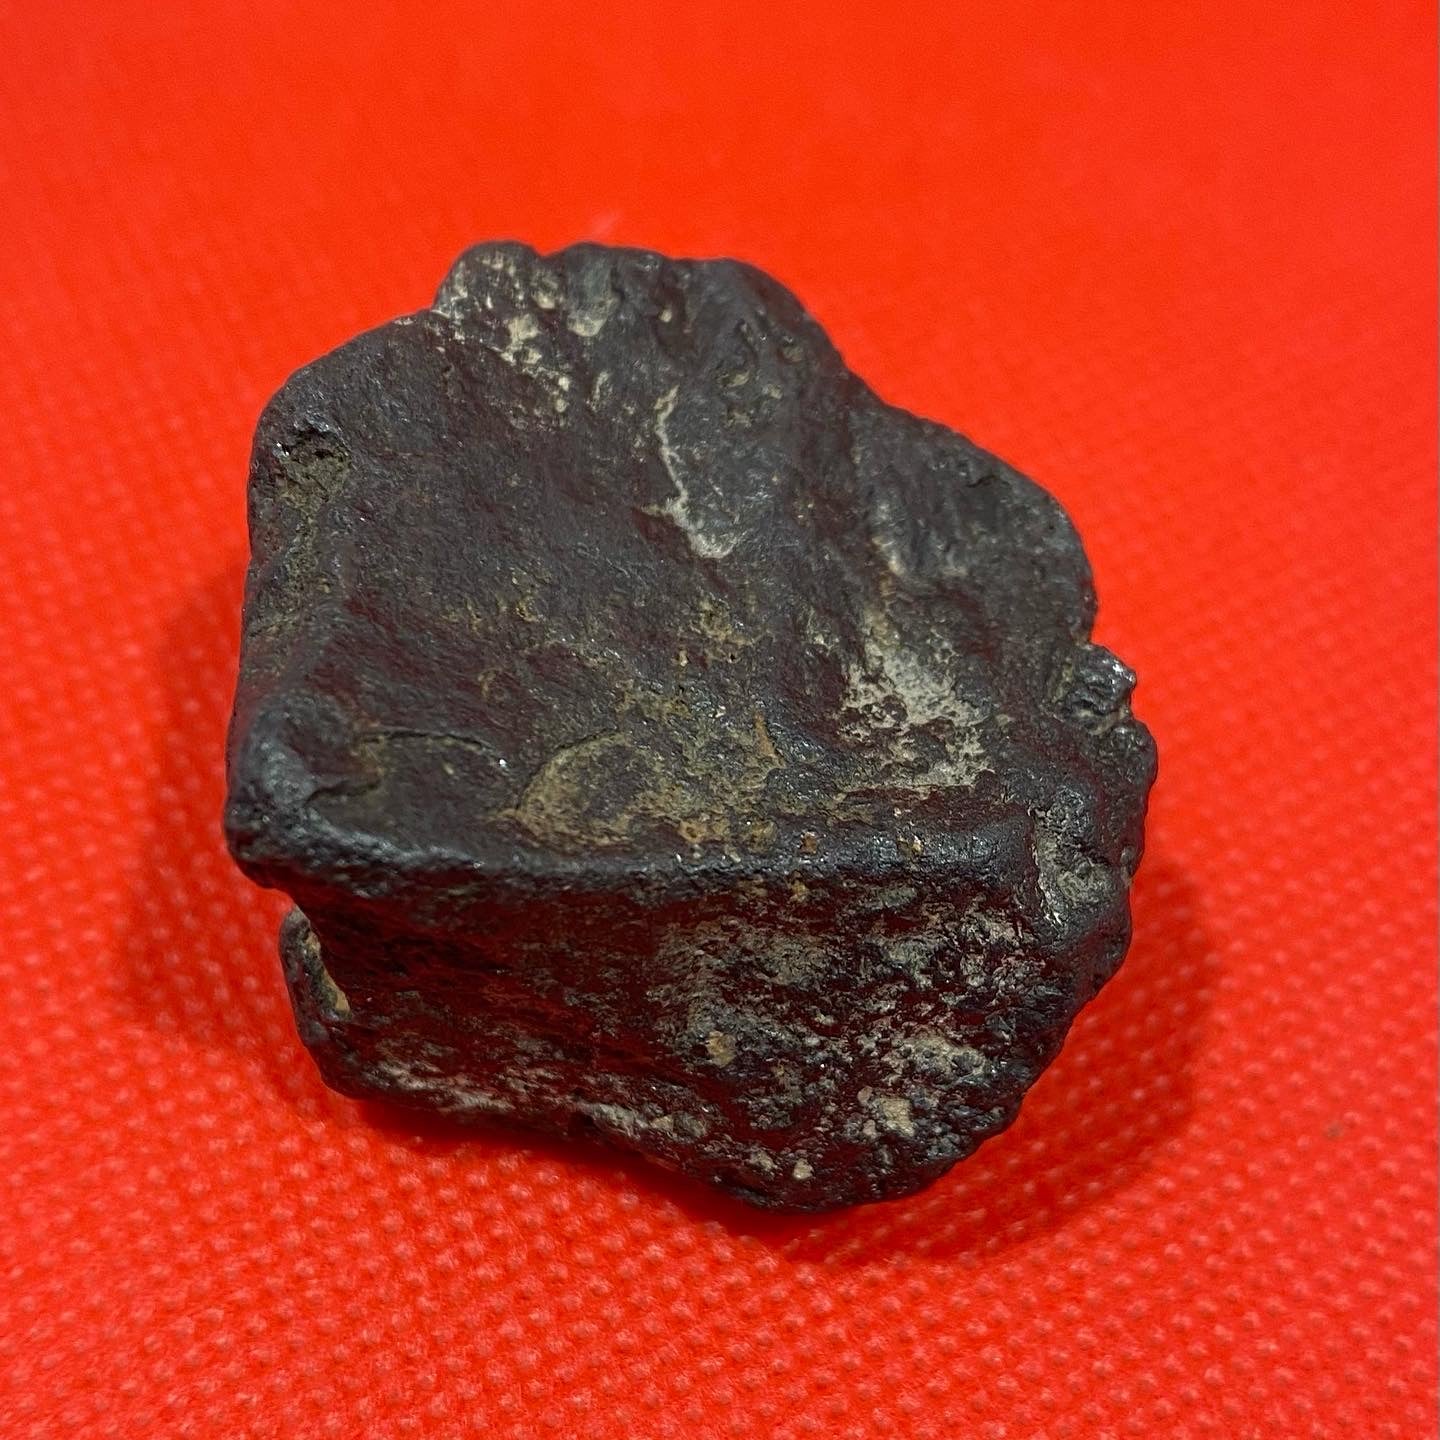 Campo del Cielo nickel iron meteorite